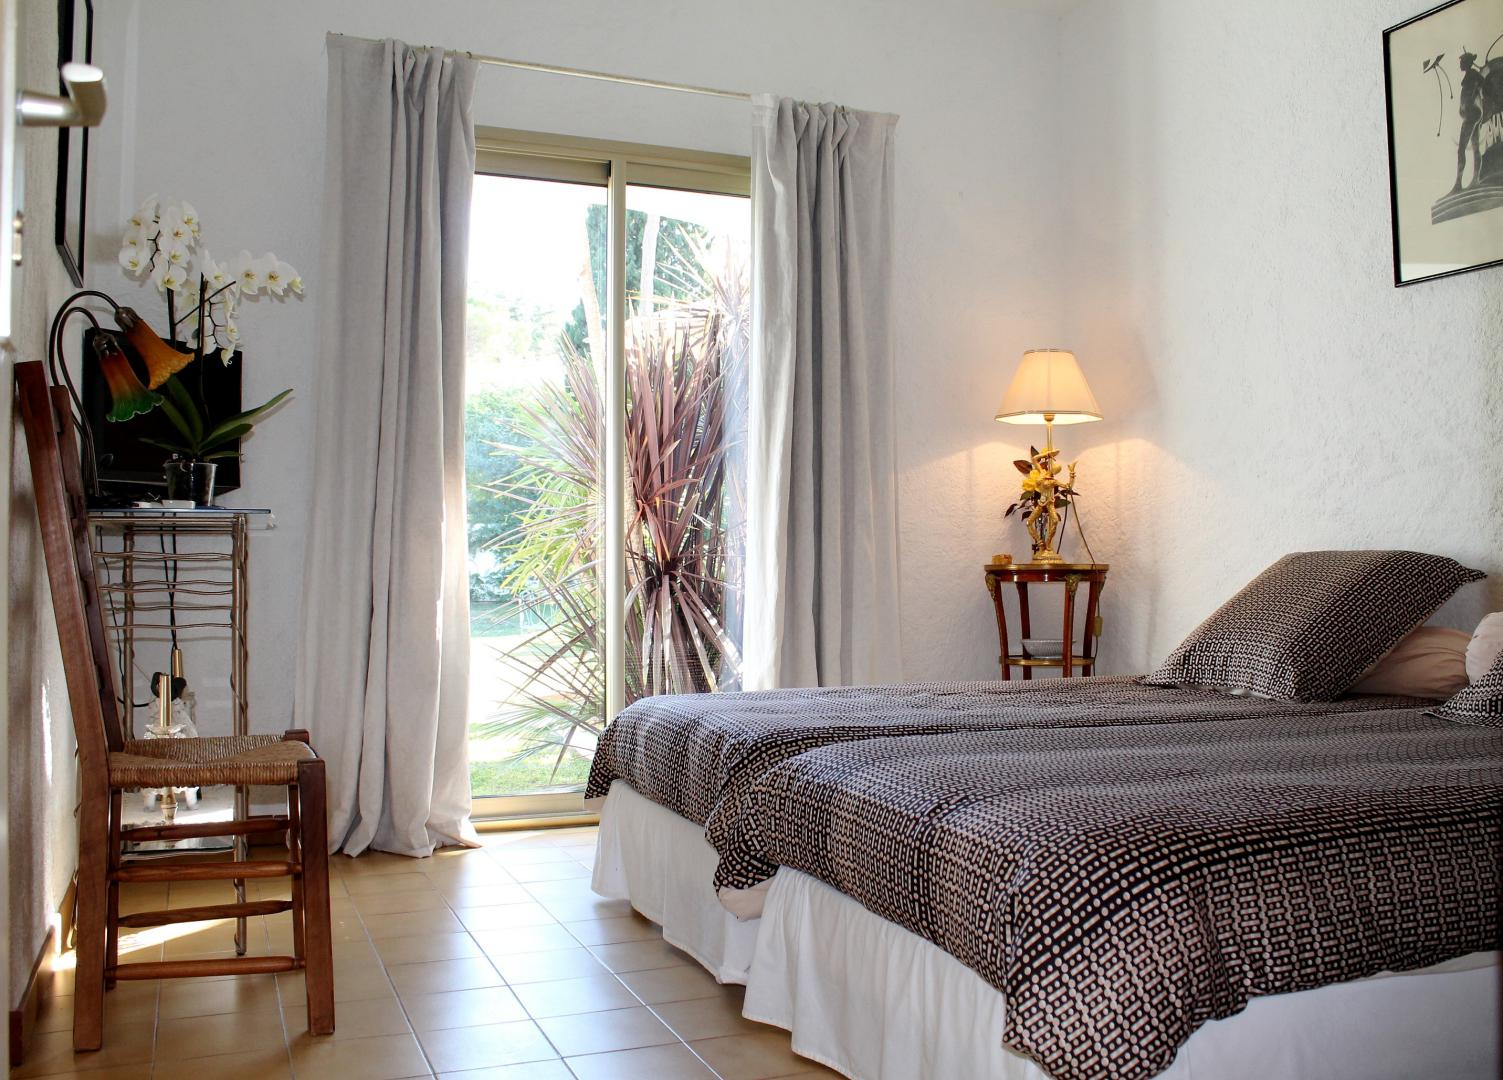 Villa Alizée Saint-Tropez : Chambres D'hôtes, Location Villa à Chambre D Hote Ramatuelle